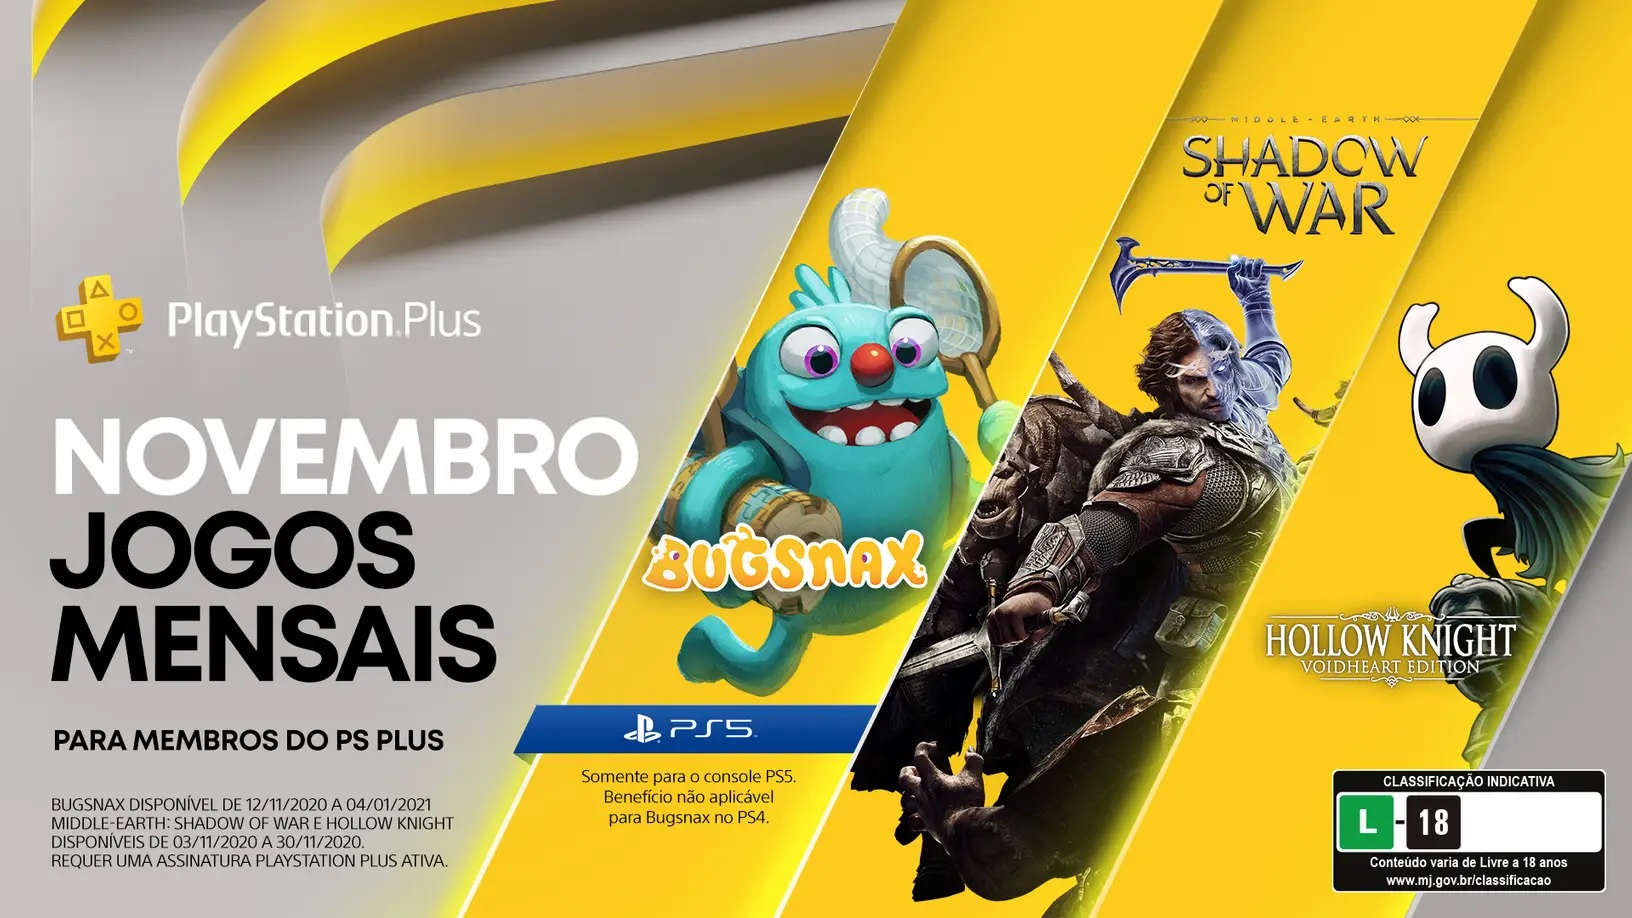 PlayStation 5 chega em 19 de novembro no Brasil – Pizza Fria